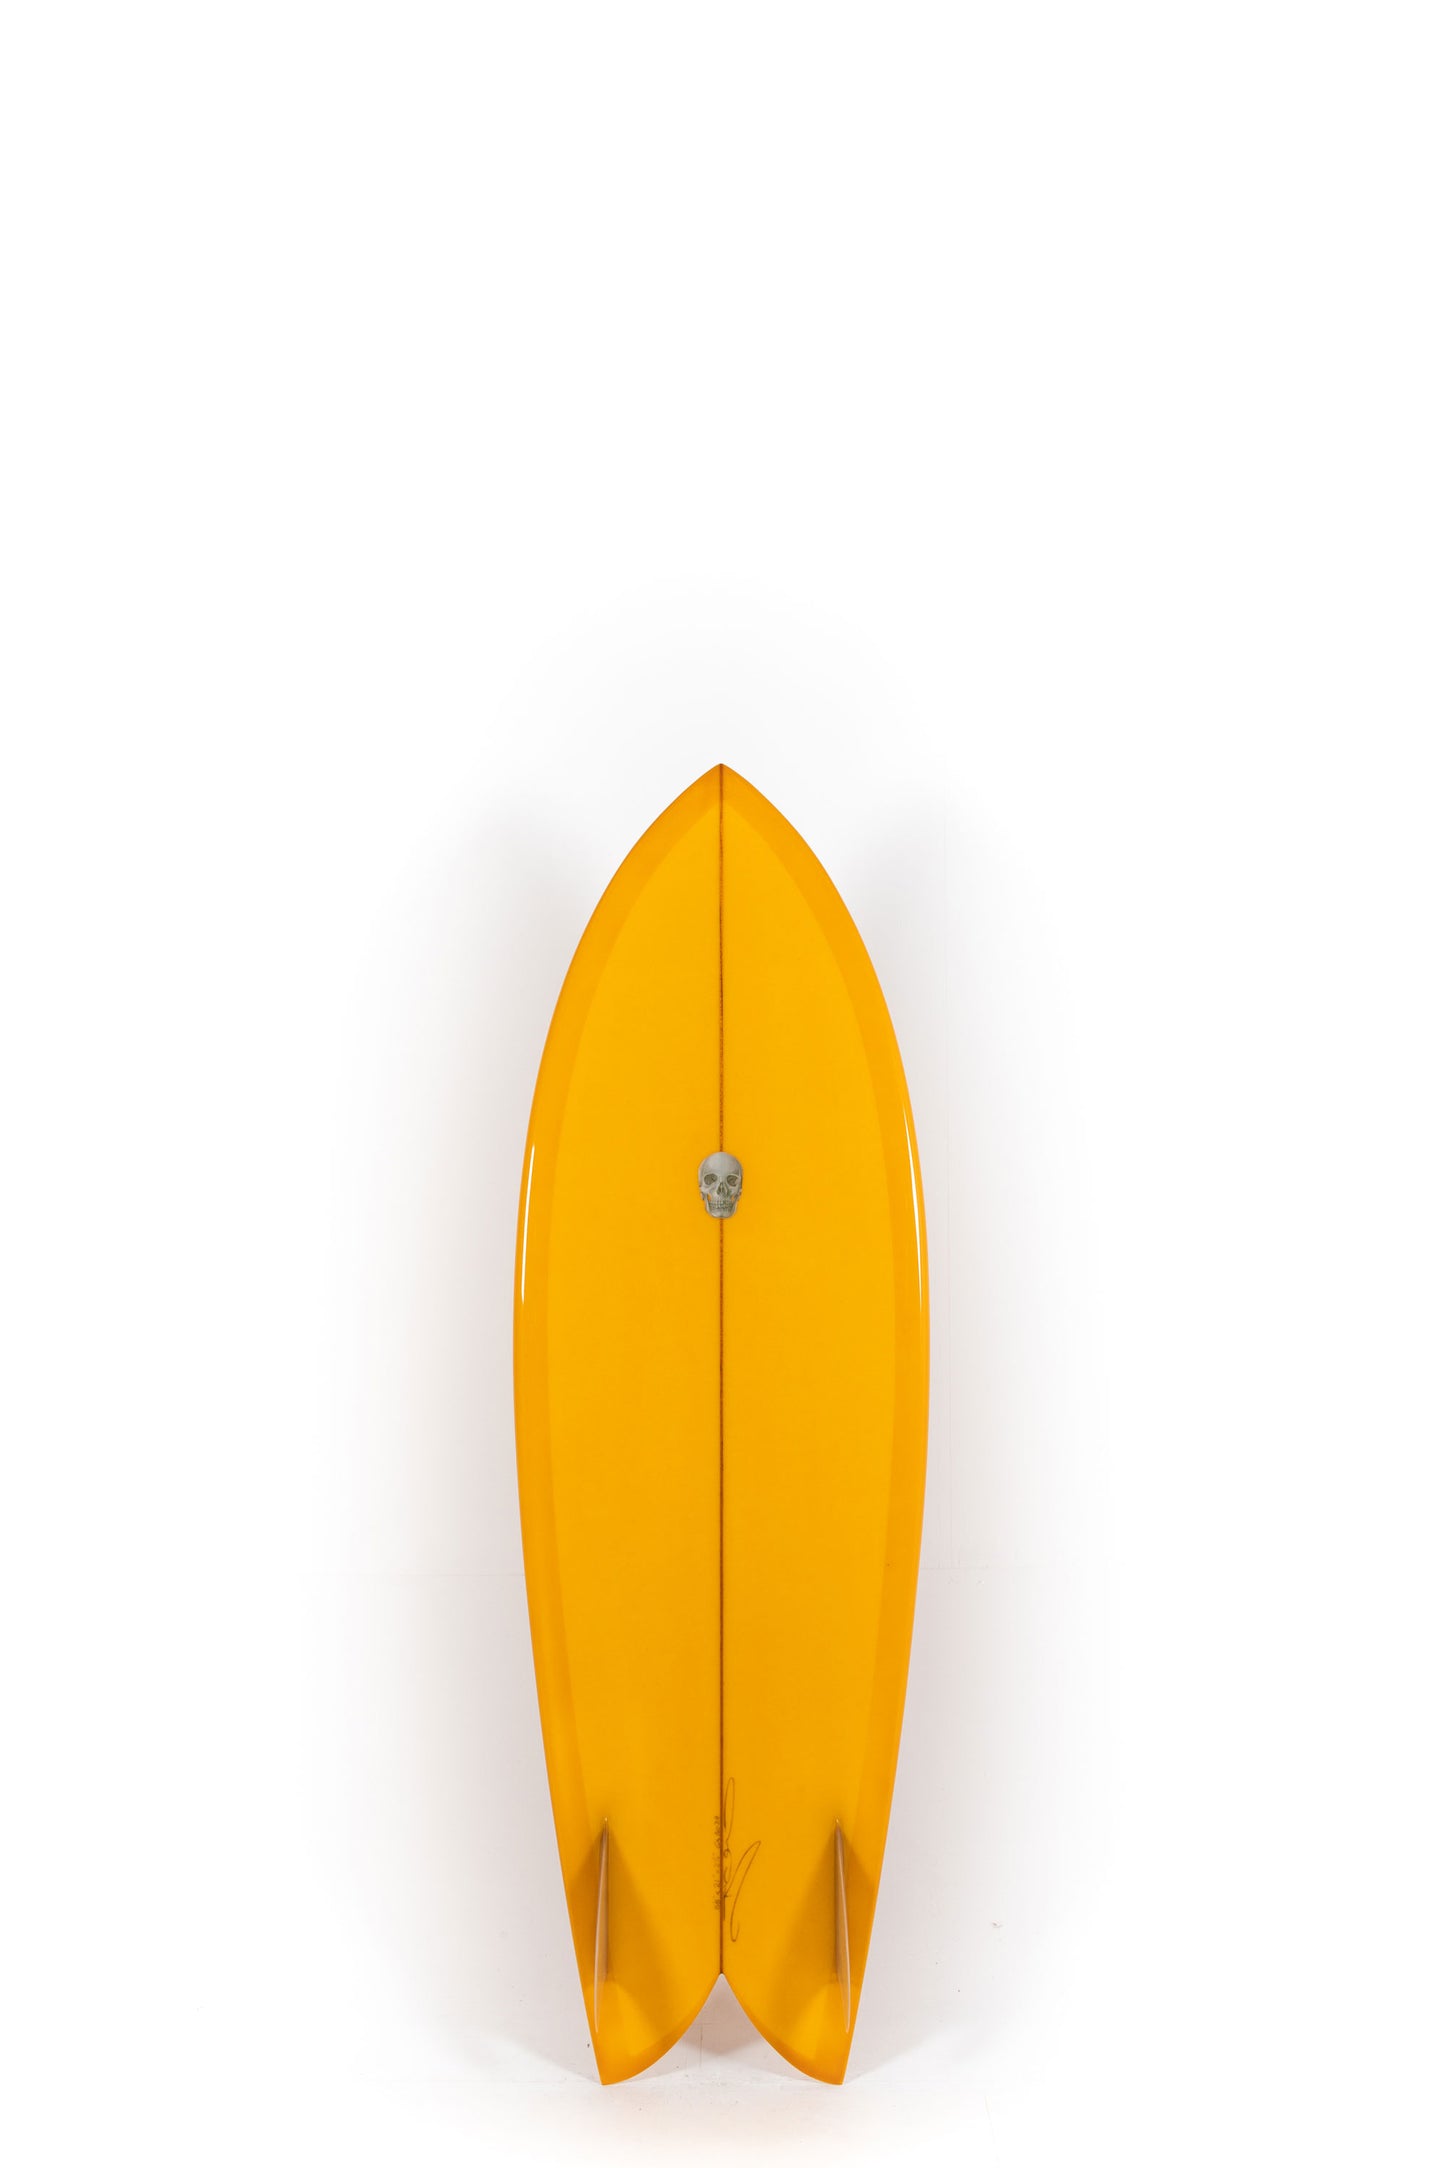 Pukas Surf Shop - Christenson Surfboards - CHRIS FISH - 5'8" x 21 x 2 1/2 - CX05034